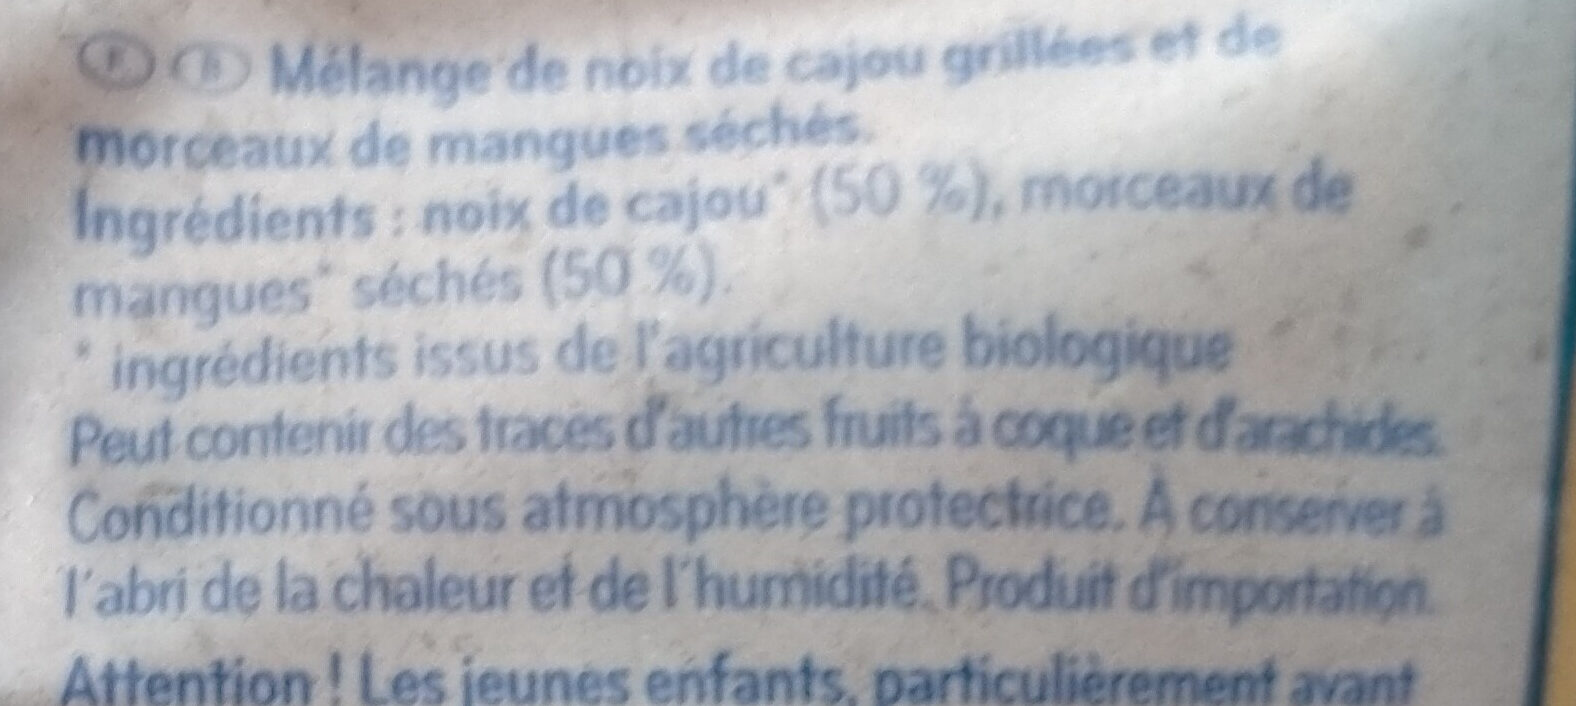 Cajou-Mangue - Ingrédients